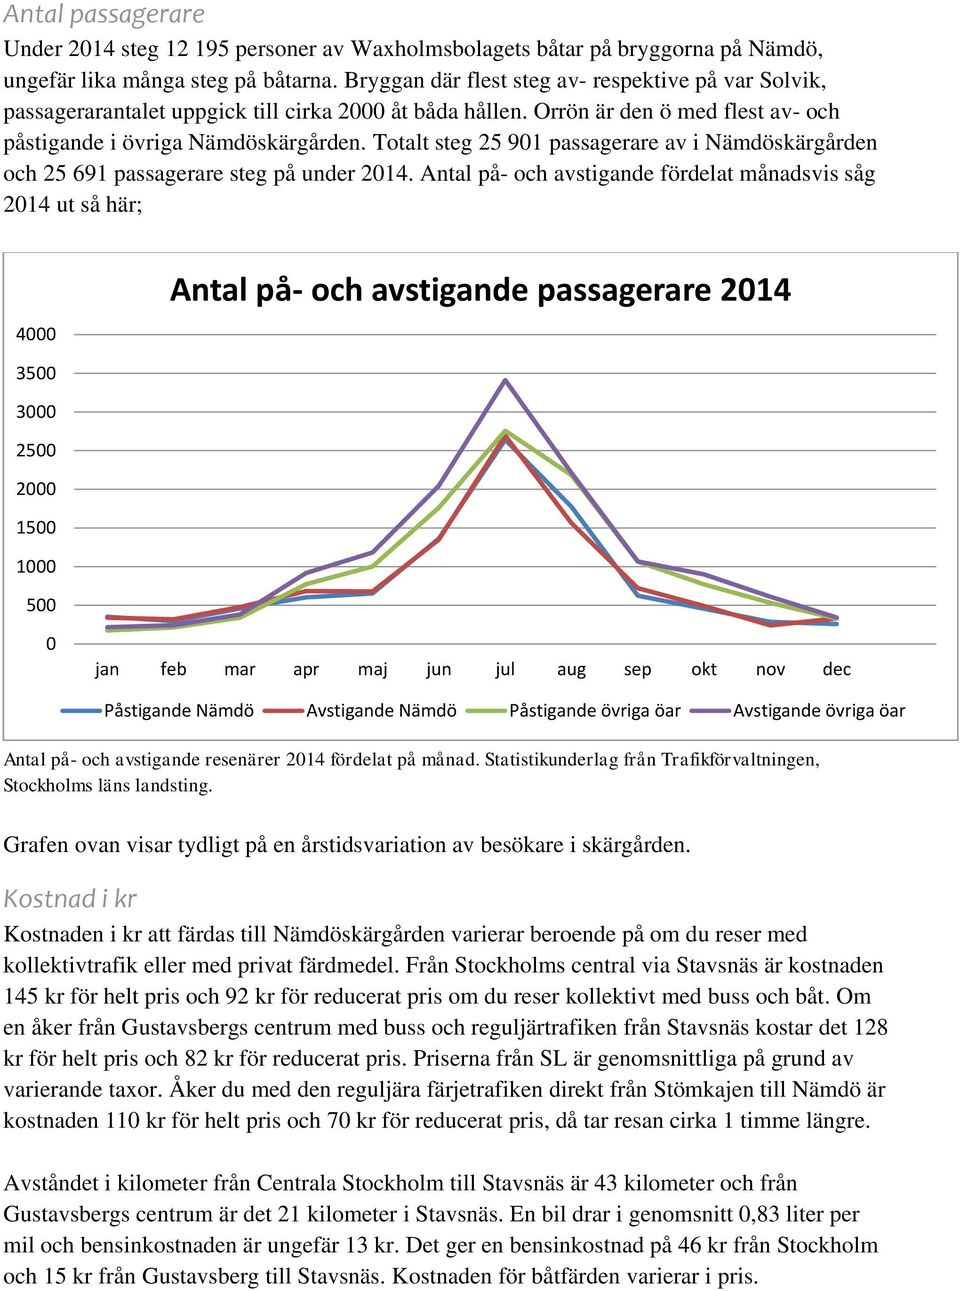 Totalt steg 25 901 passagerare av i Nämdöskärgården och 25 691 passagerare steg på under 2014.